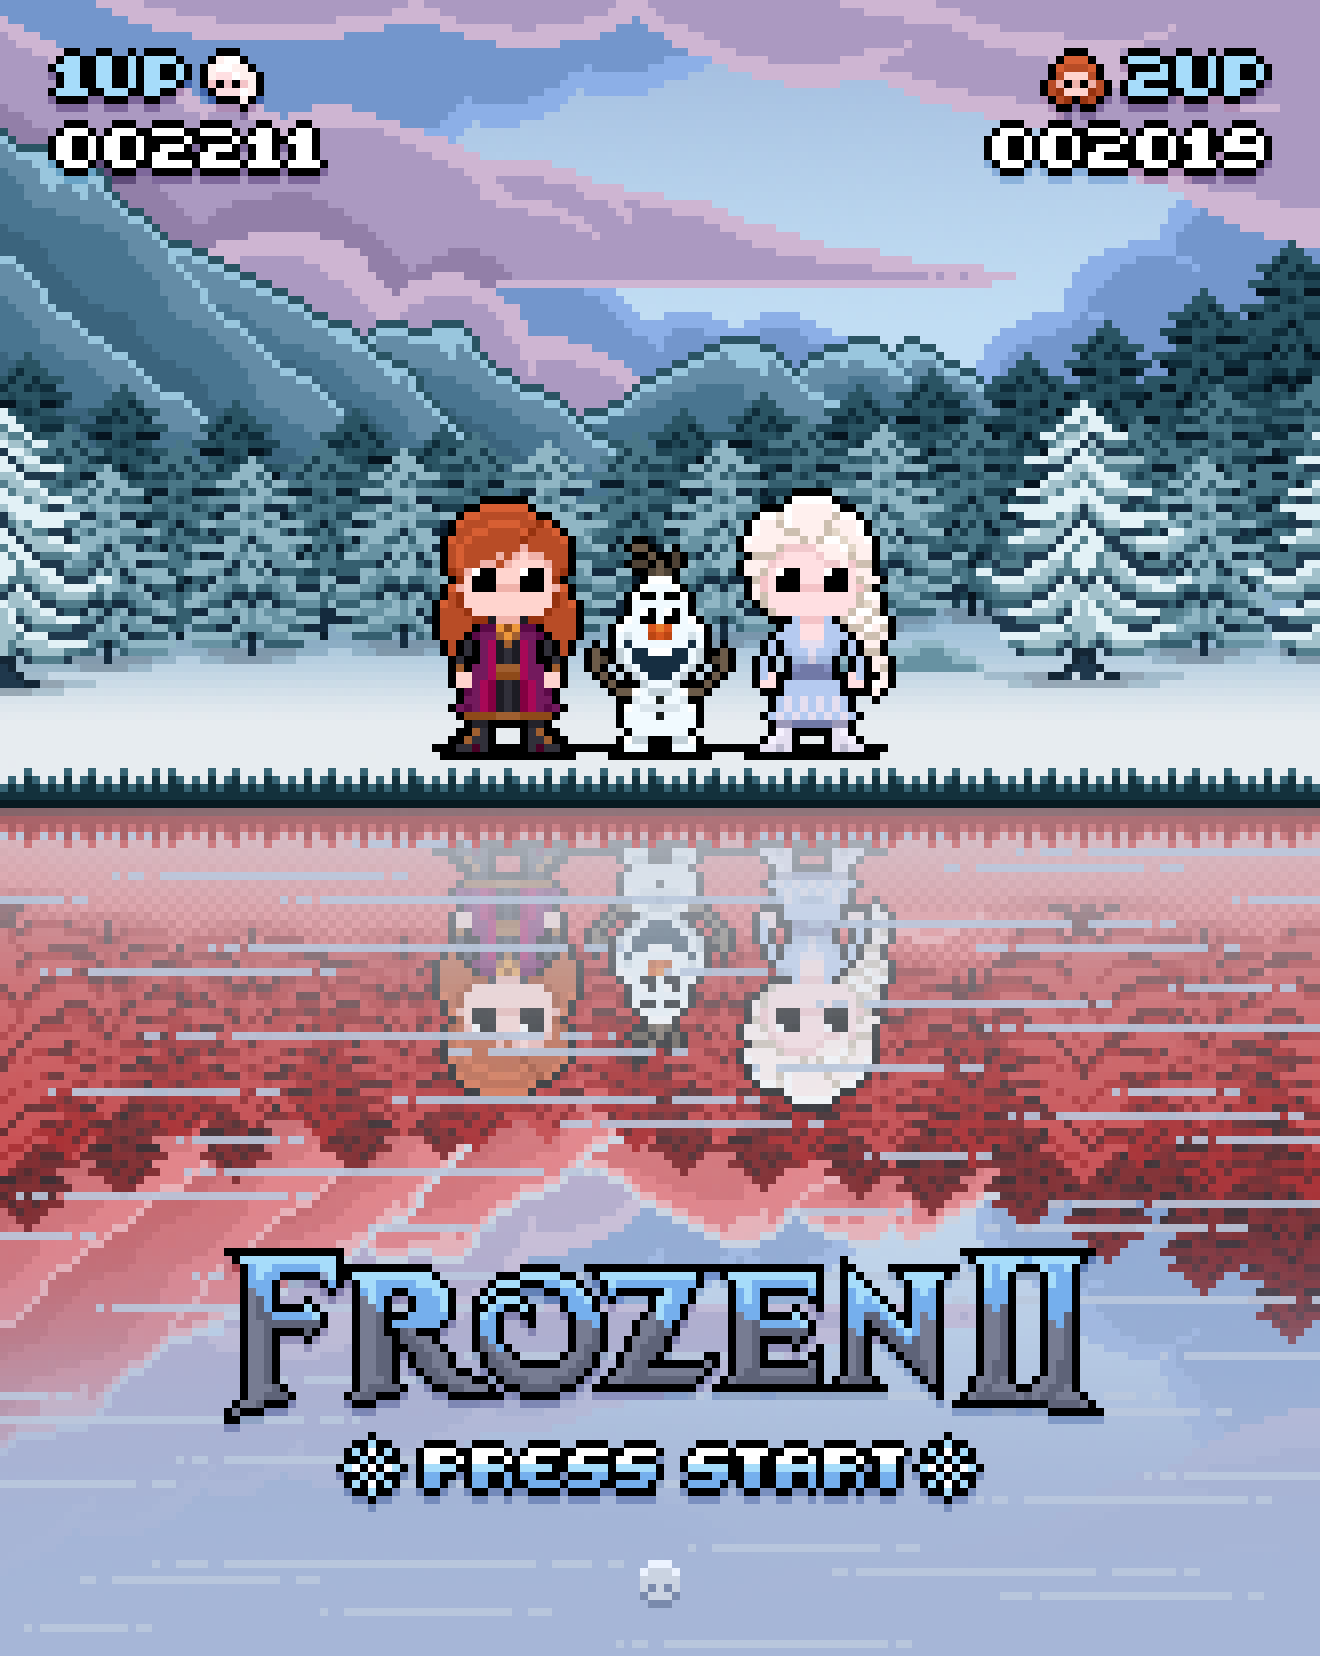 frozen 2 movie